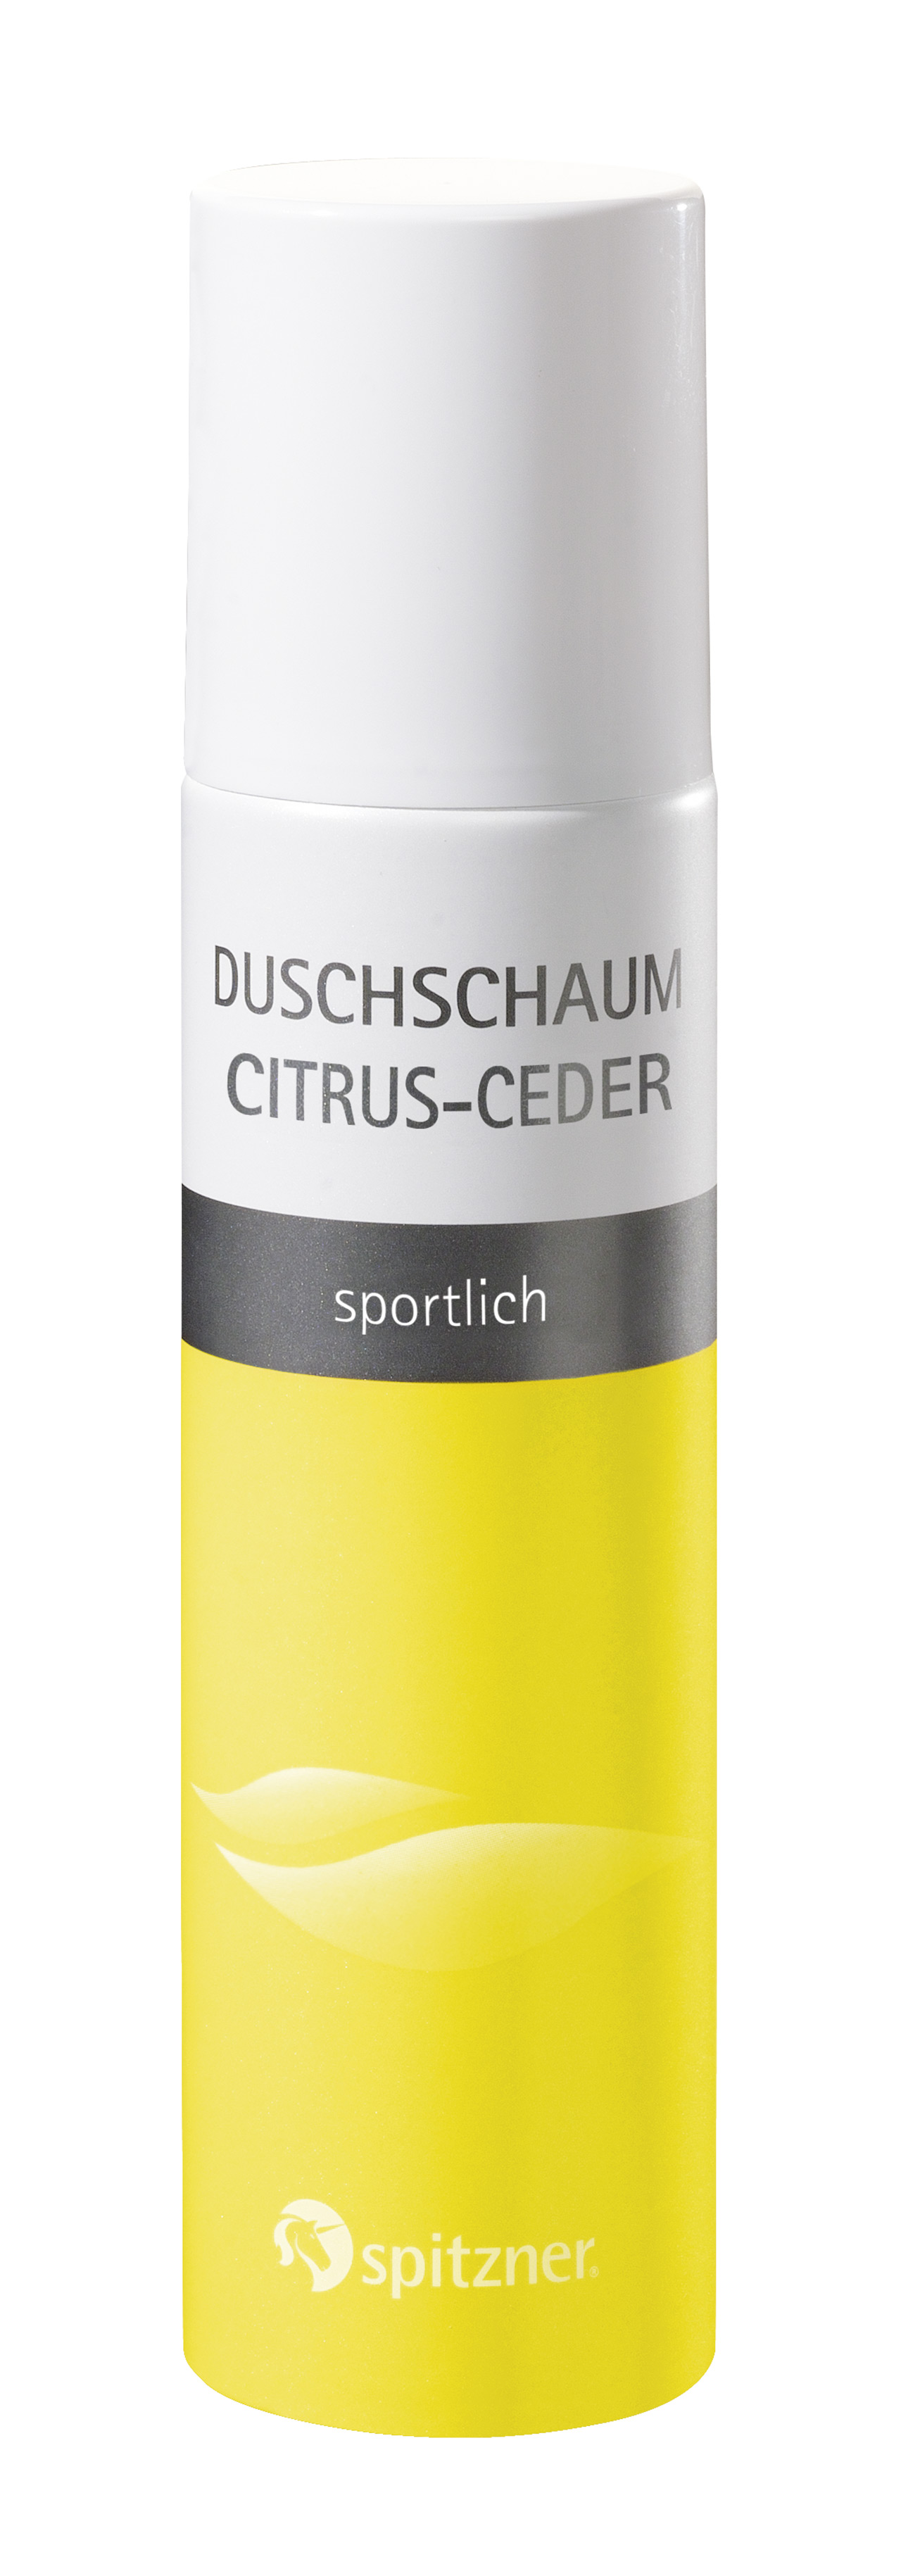 Spitzner Duschschaum Citrus-Ceder, 150 ml